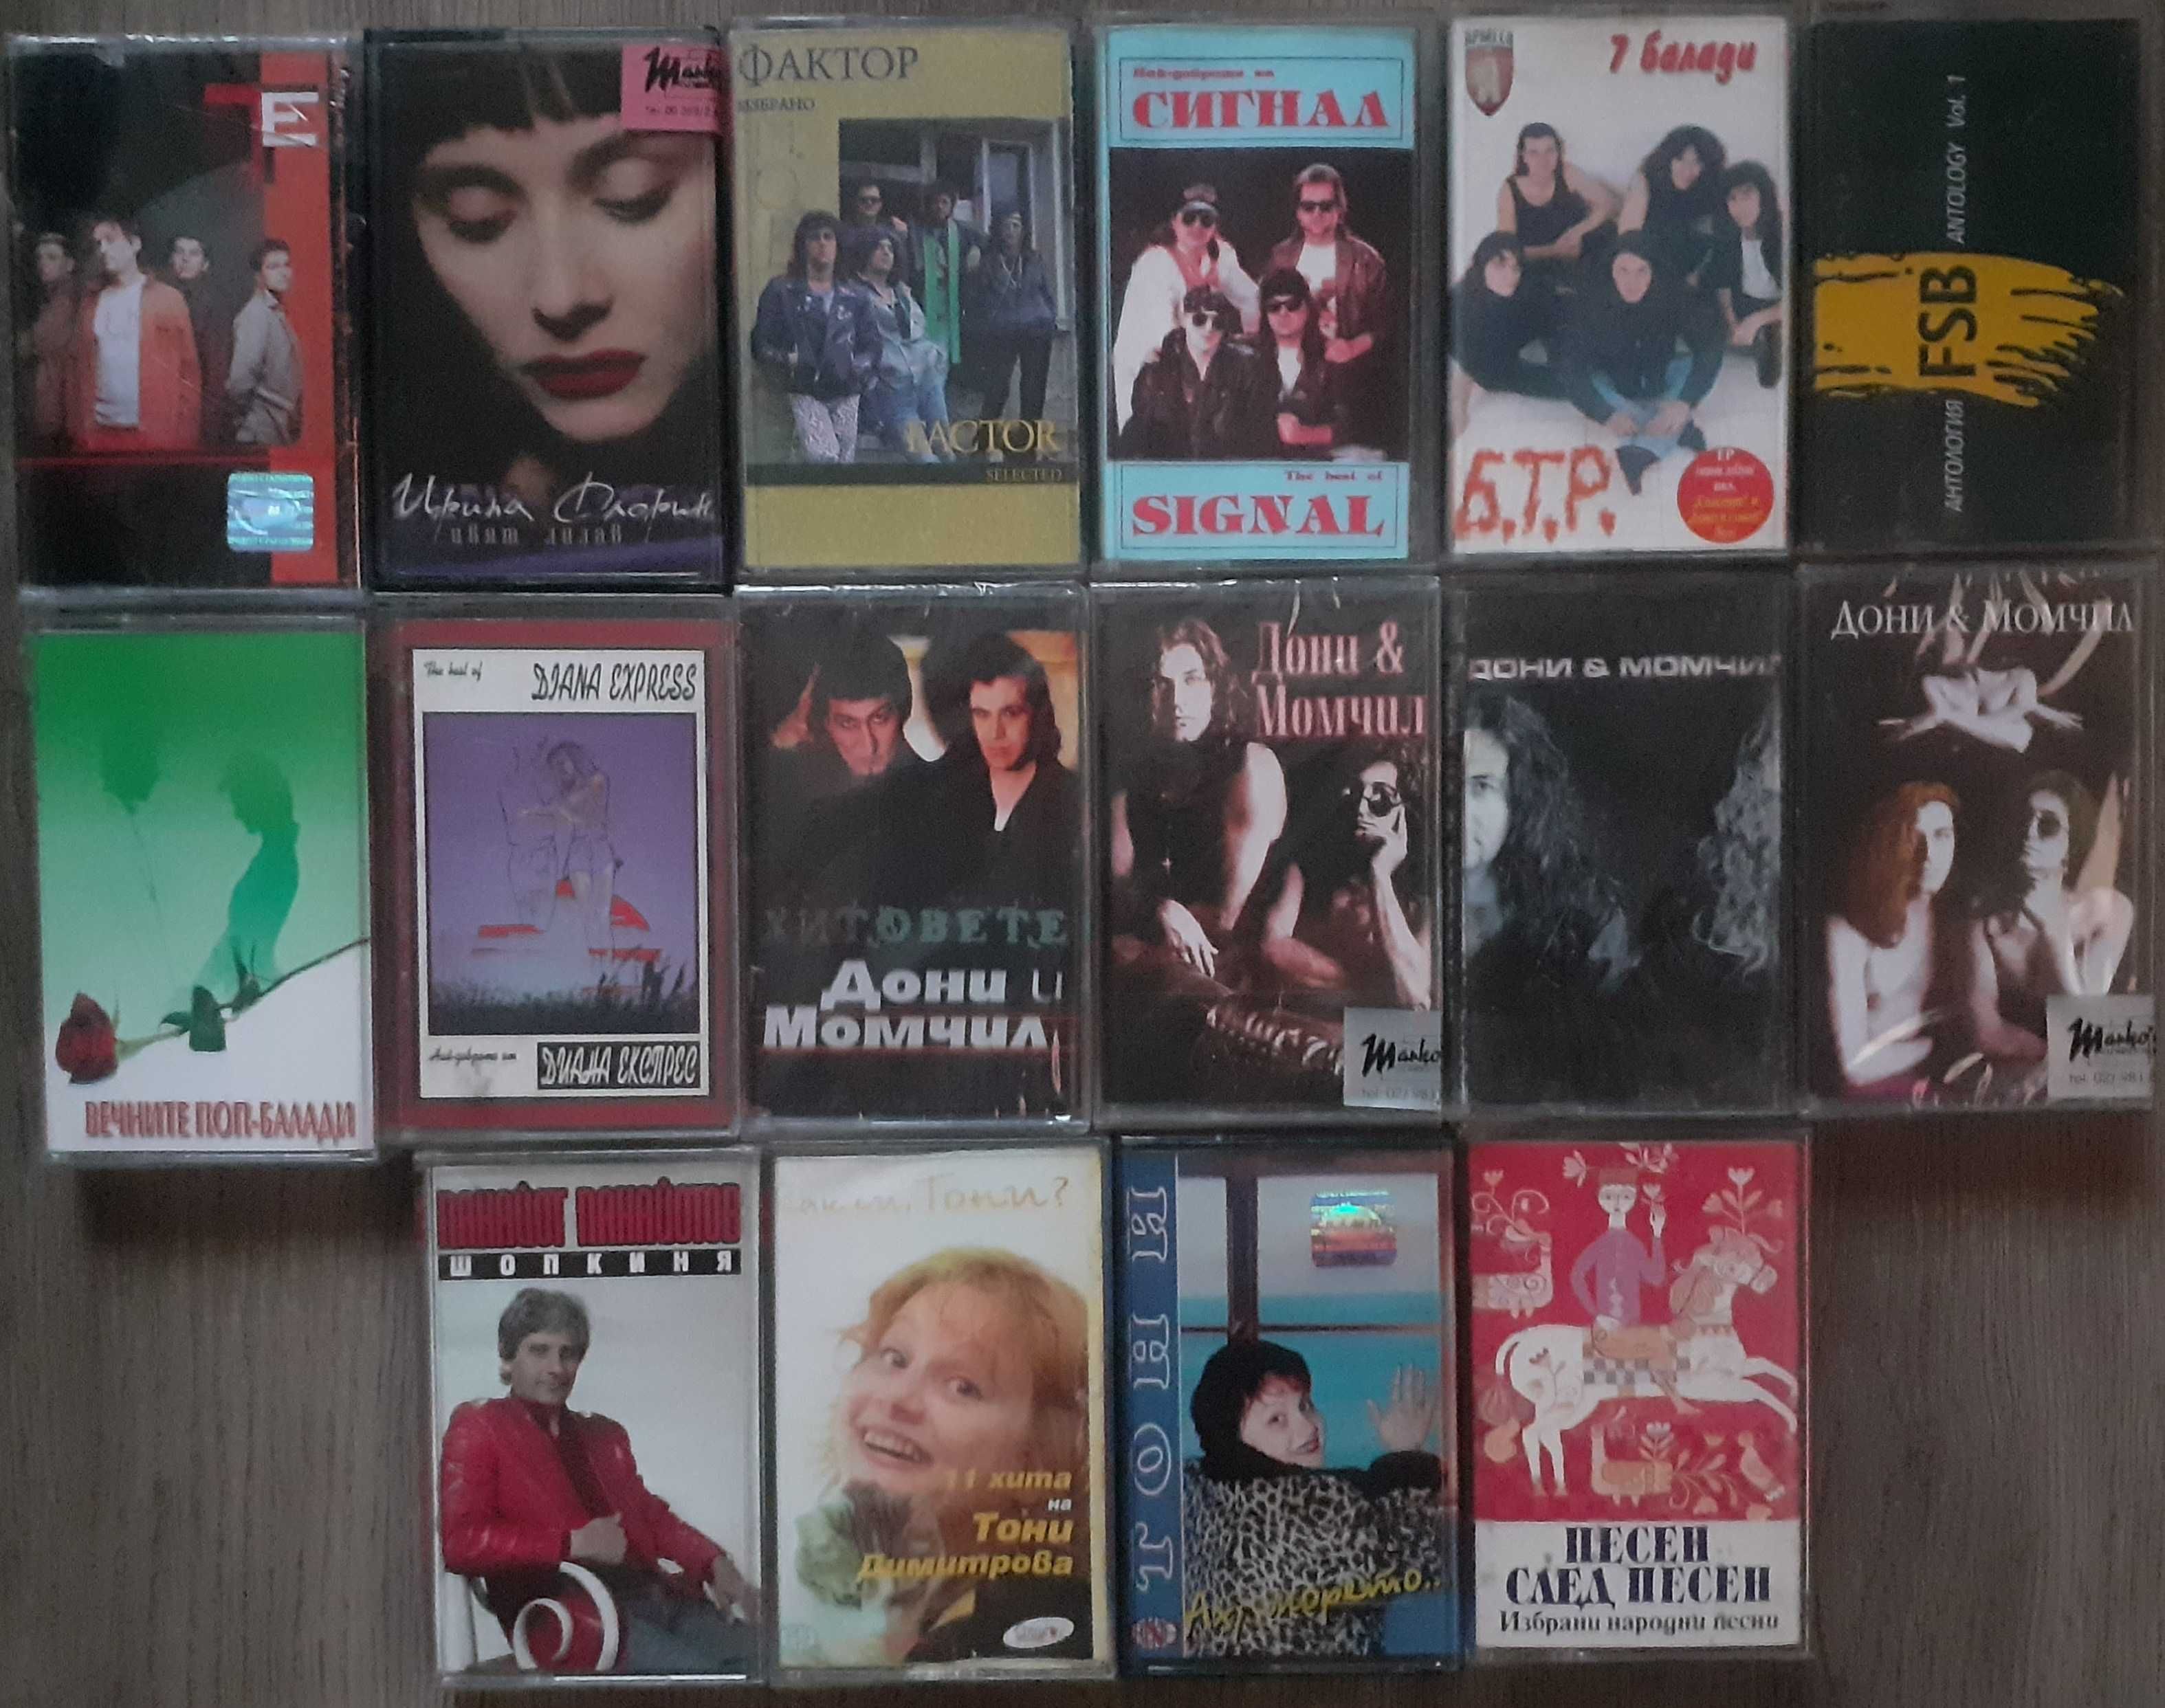 Аудио касети,CD-ta с българска музика и записвани дискове с обложки